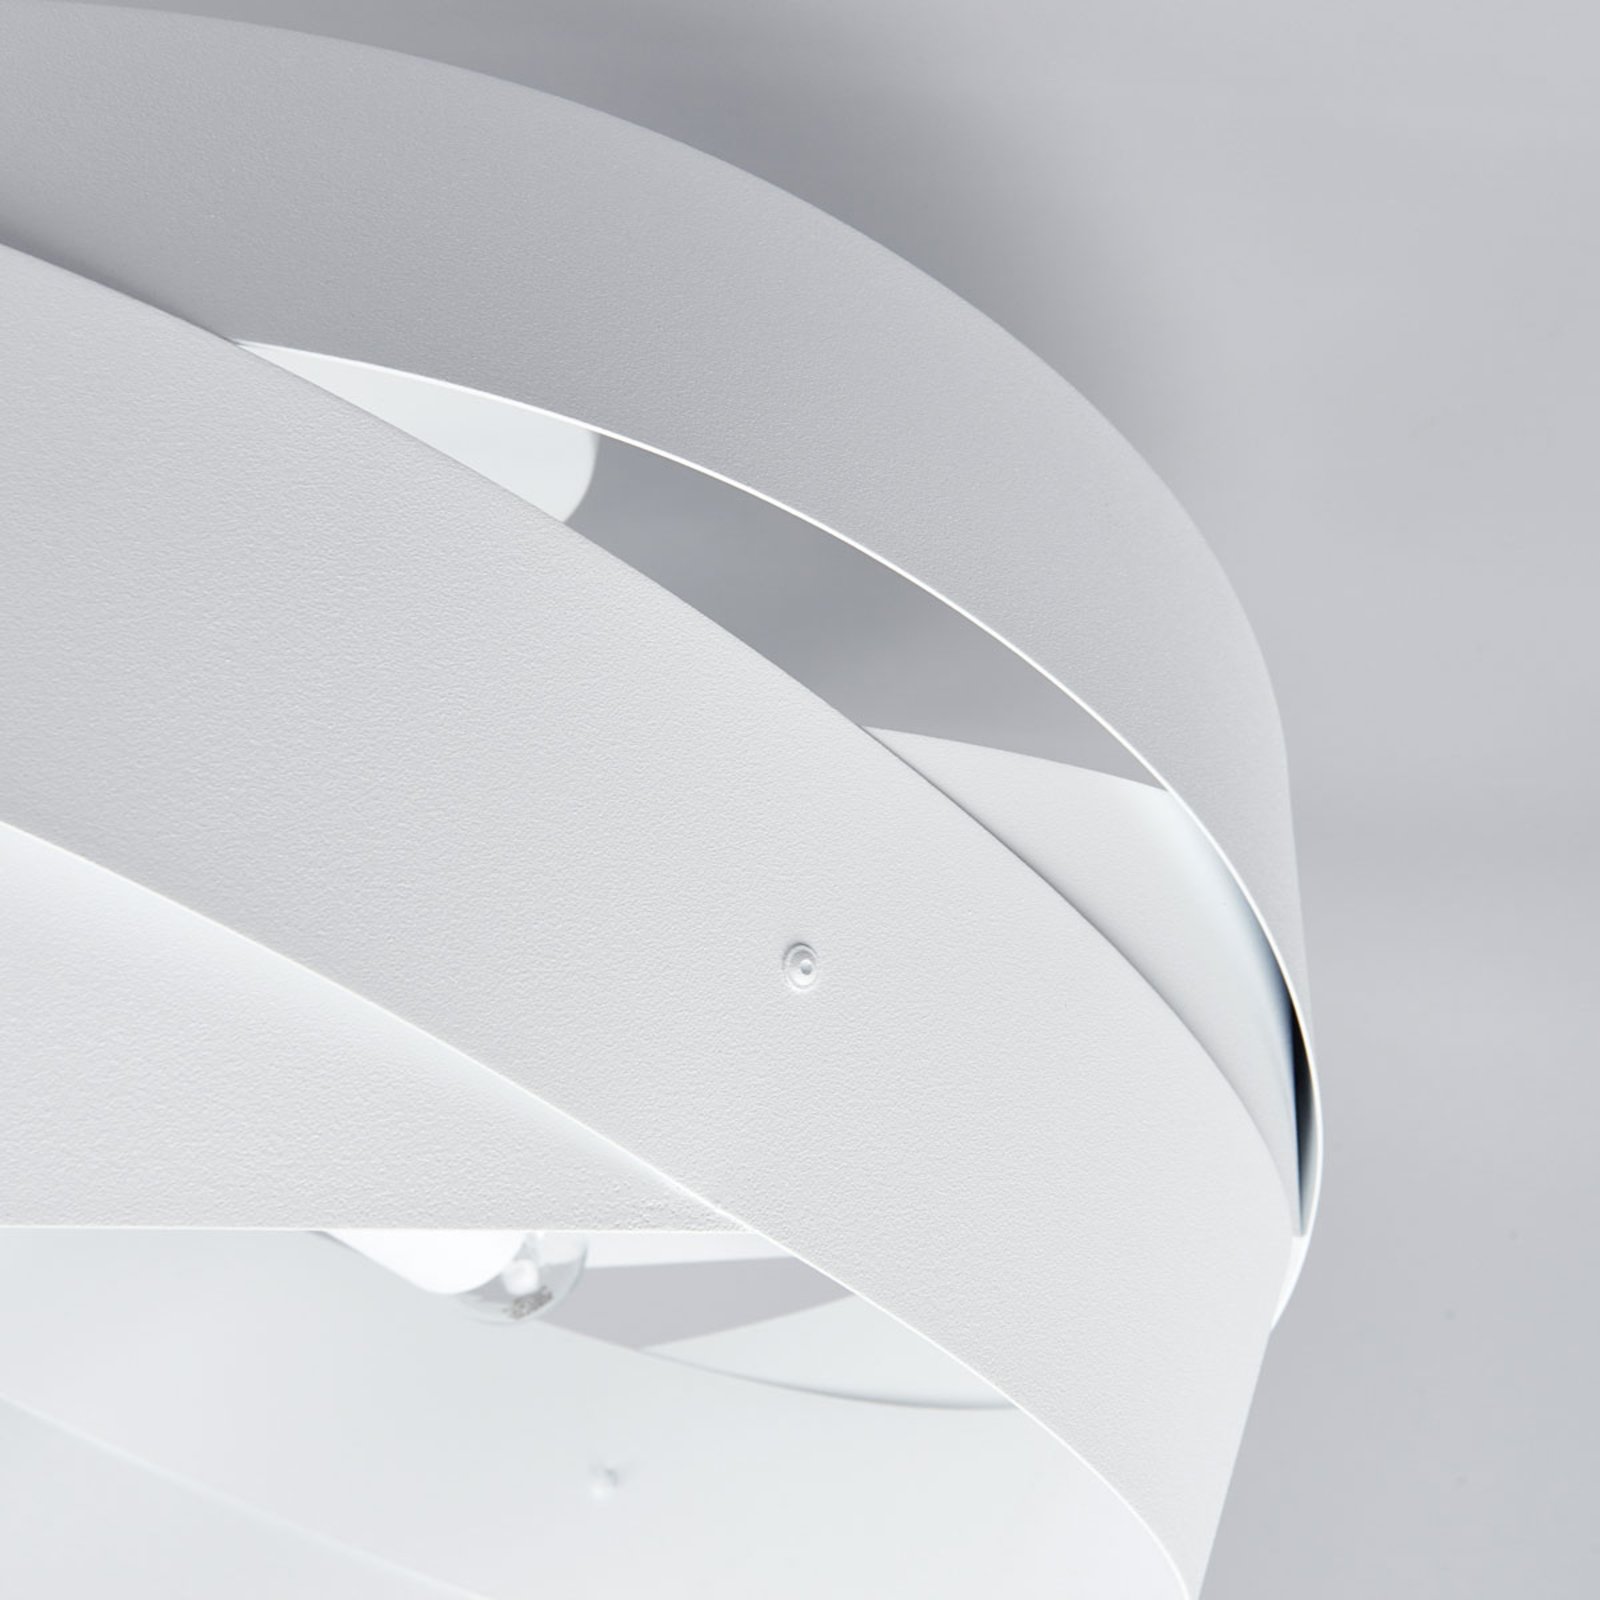 Tornado – biała lampa sufitowa o pięknym kształcie